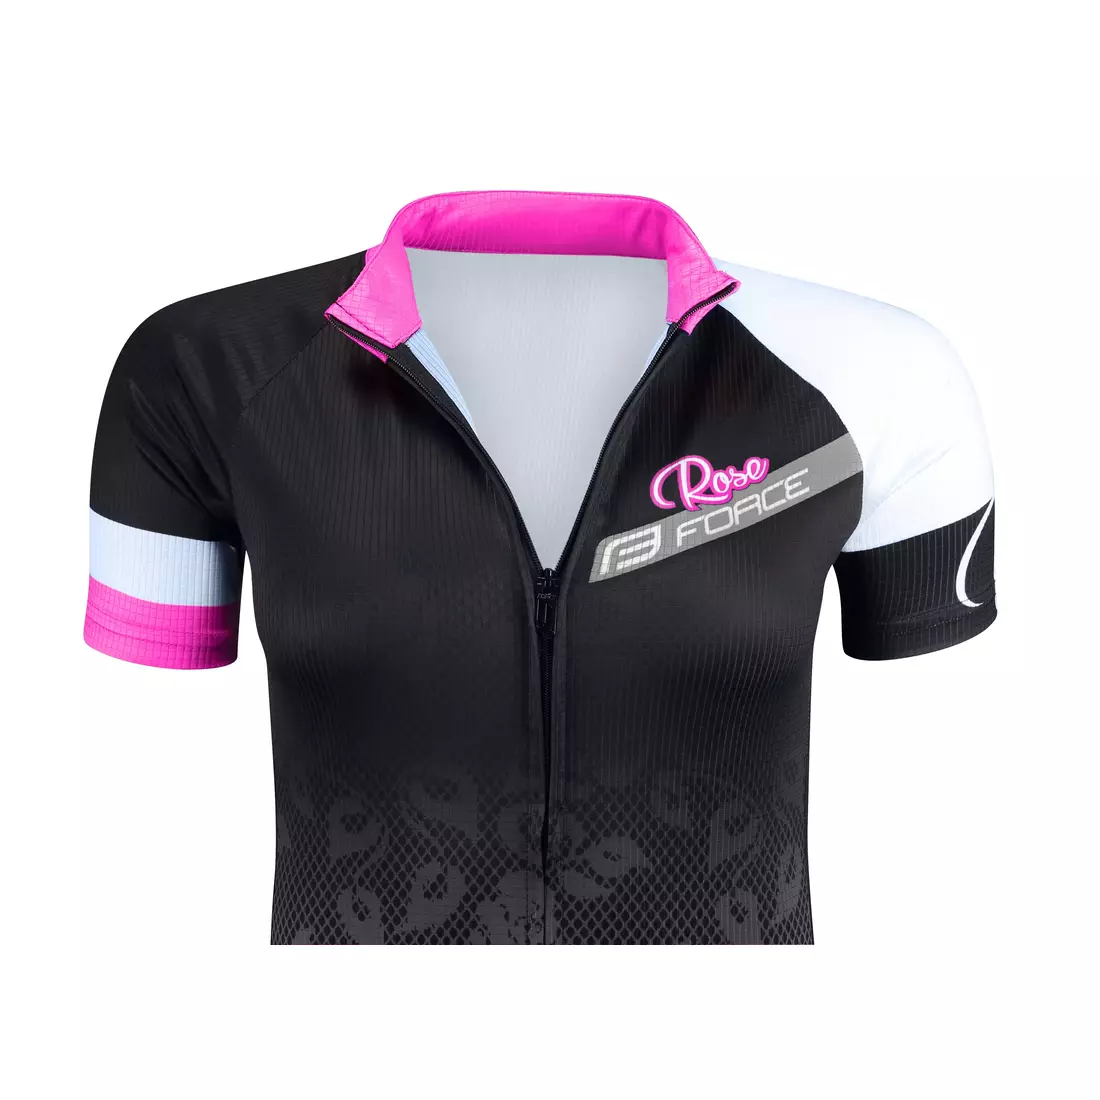 FORCE ROSE dámský cyklistický dres 9001342 černo-růžový